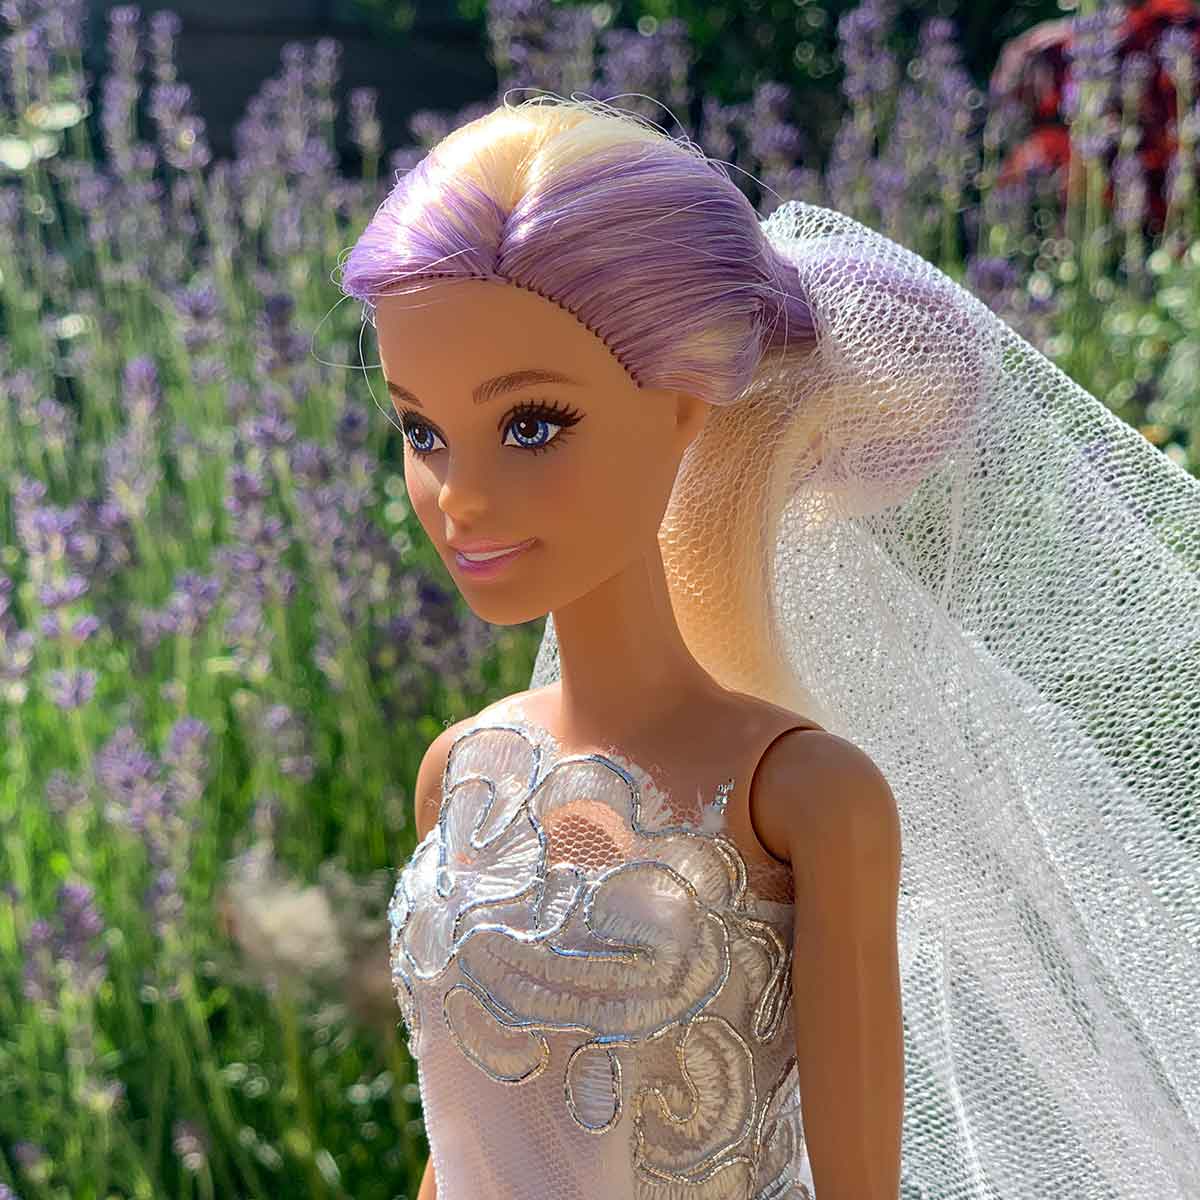 Barbie trouwjurk wit tule met kant en onderjurk van satijn